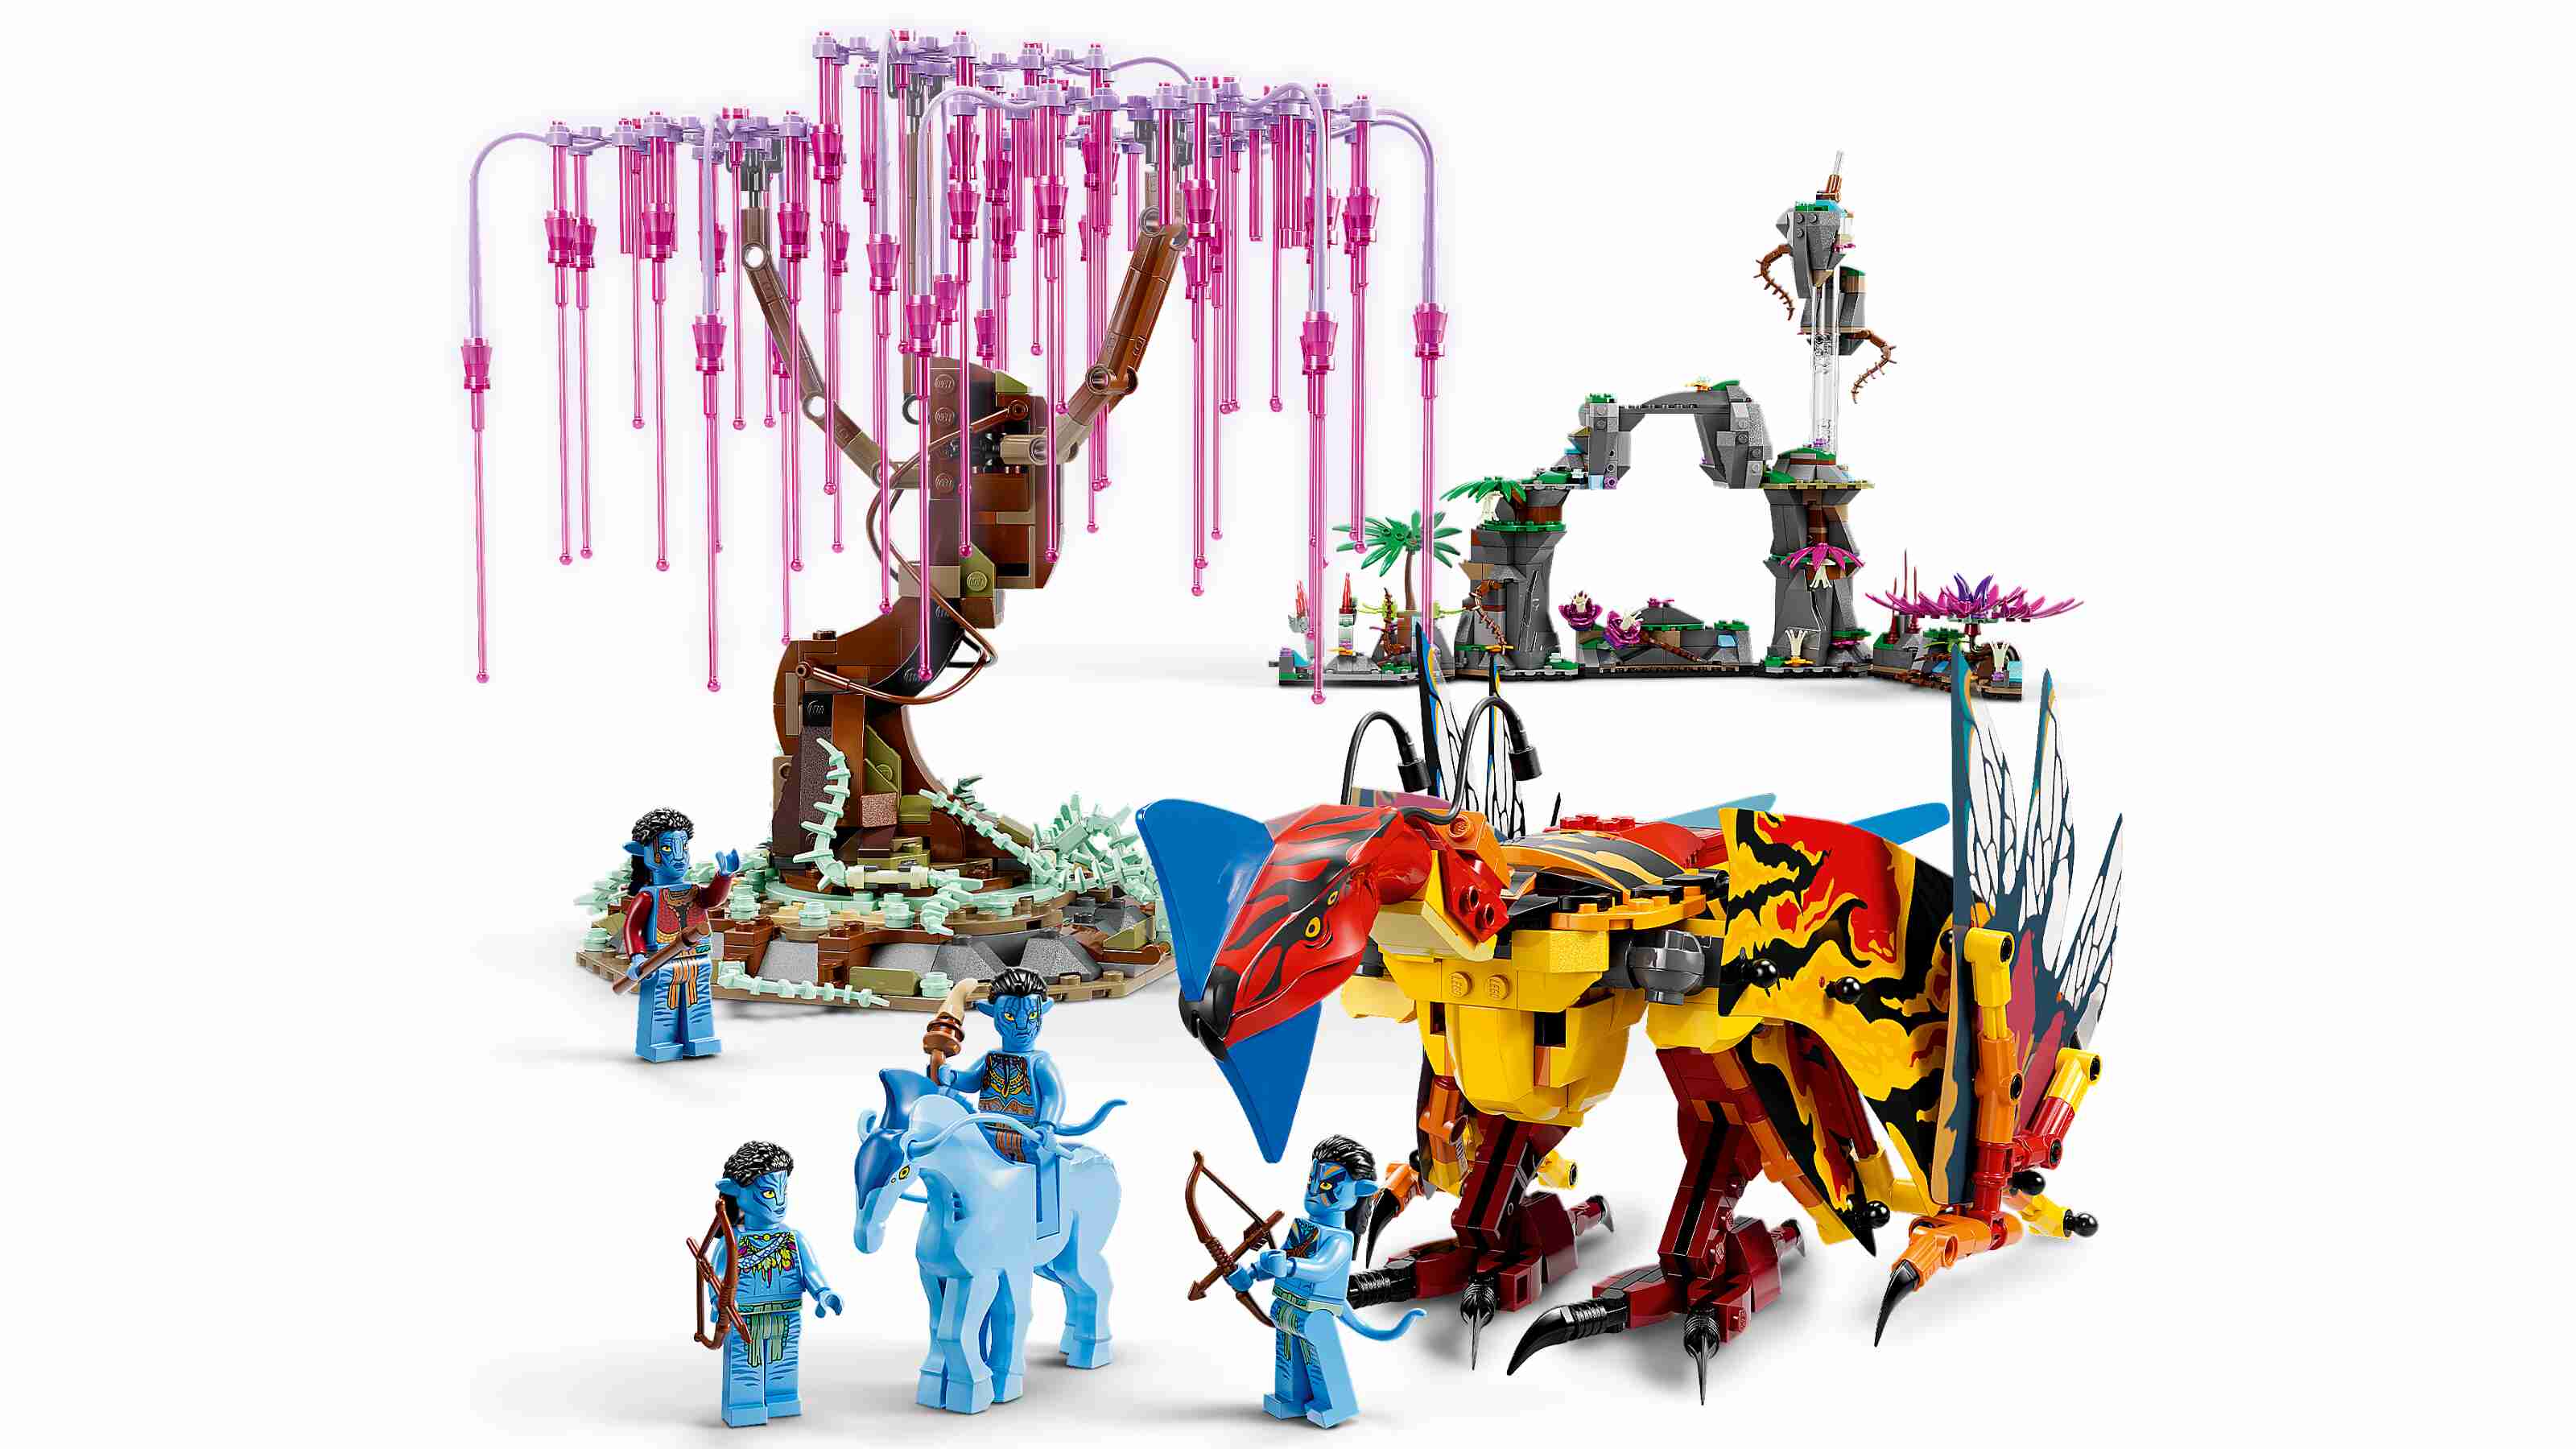 LEGO 75574 Avatar Toruk Makto und der Baum der Seelen mit 4 Minifiguren